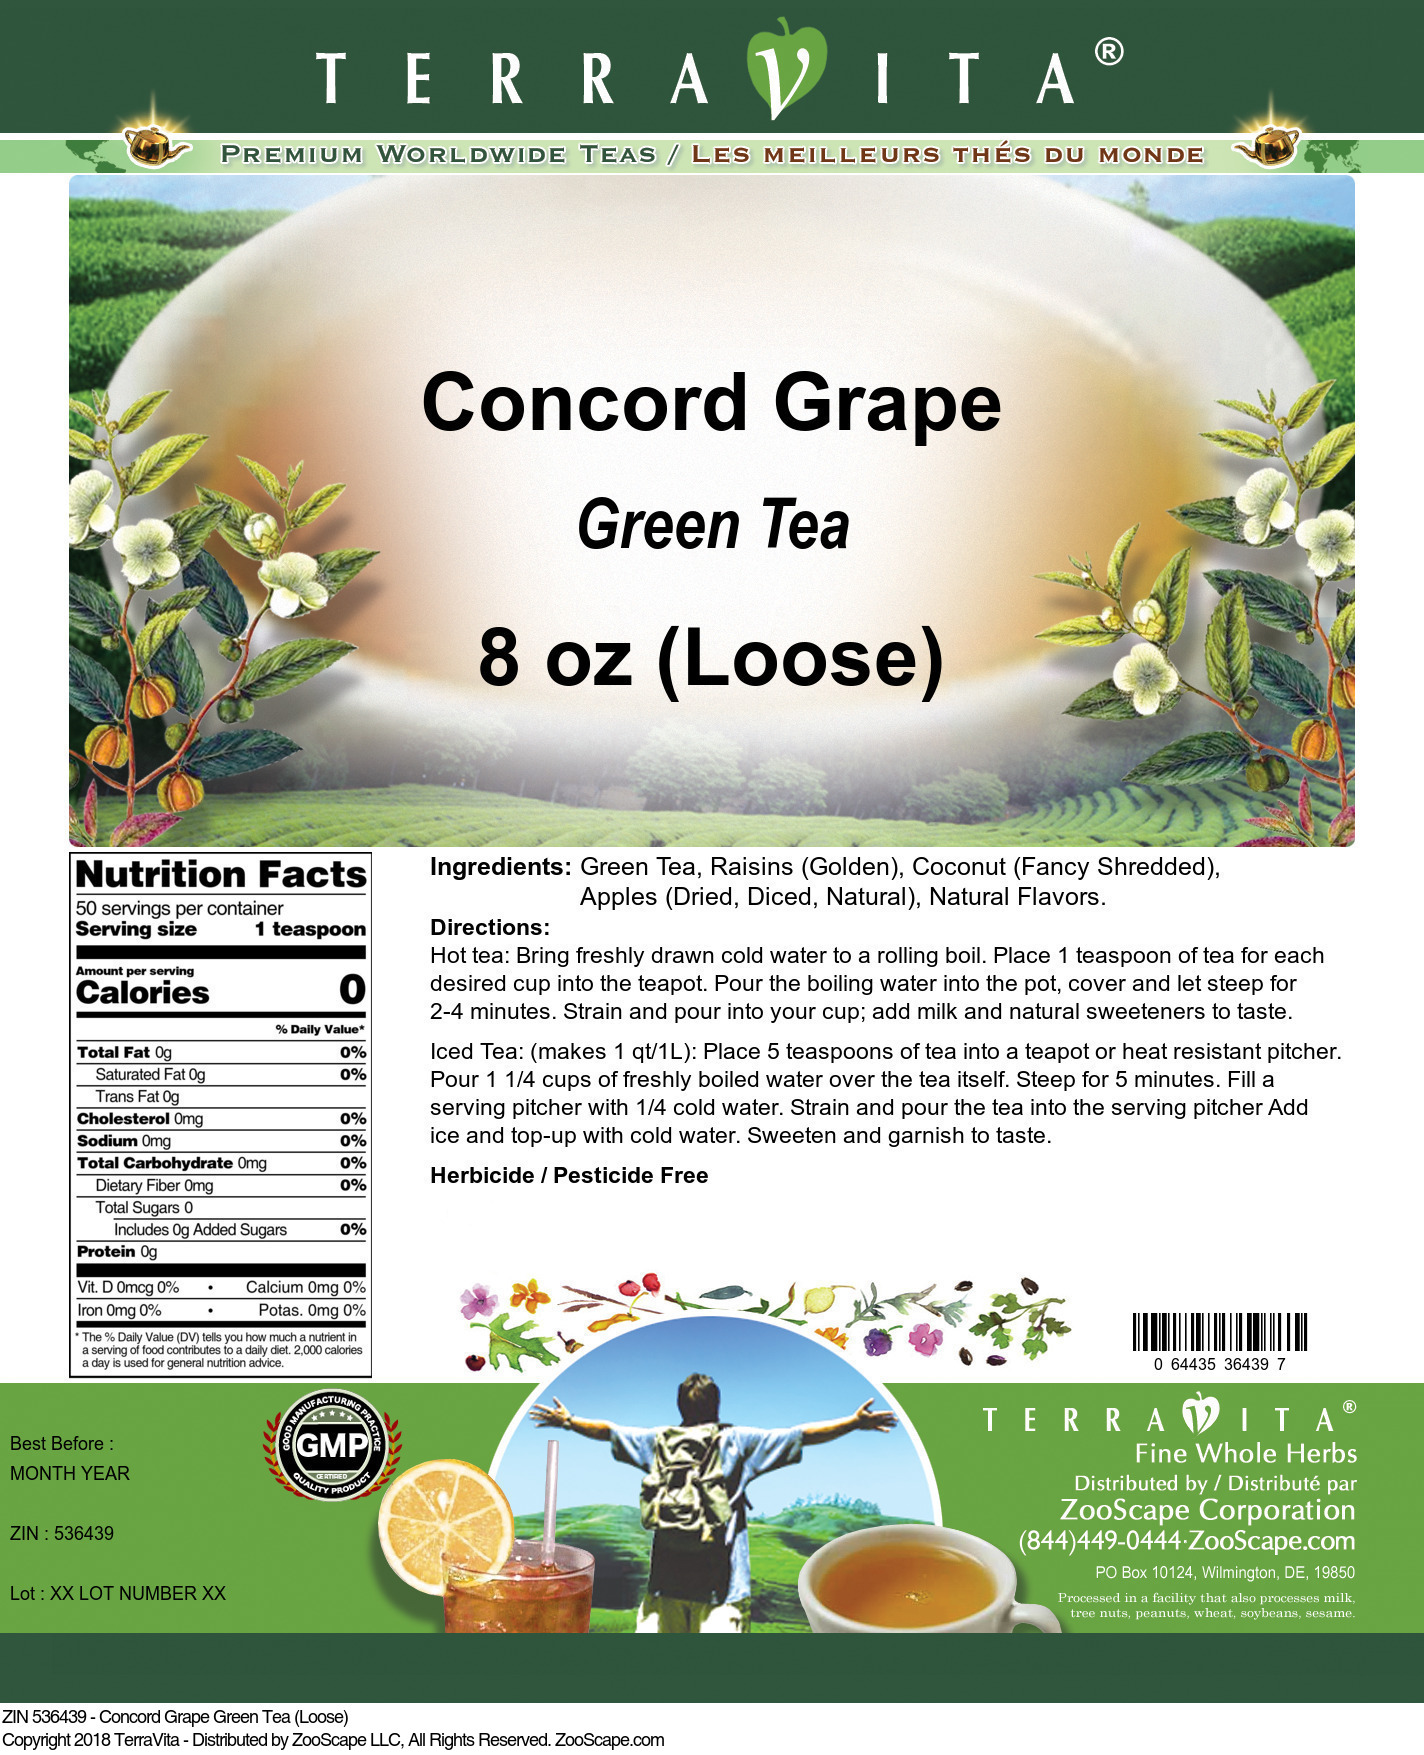 Concord Grape Green Tea (Loose) - Label